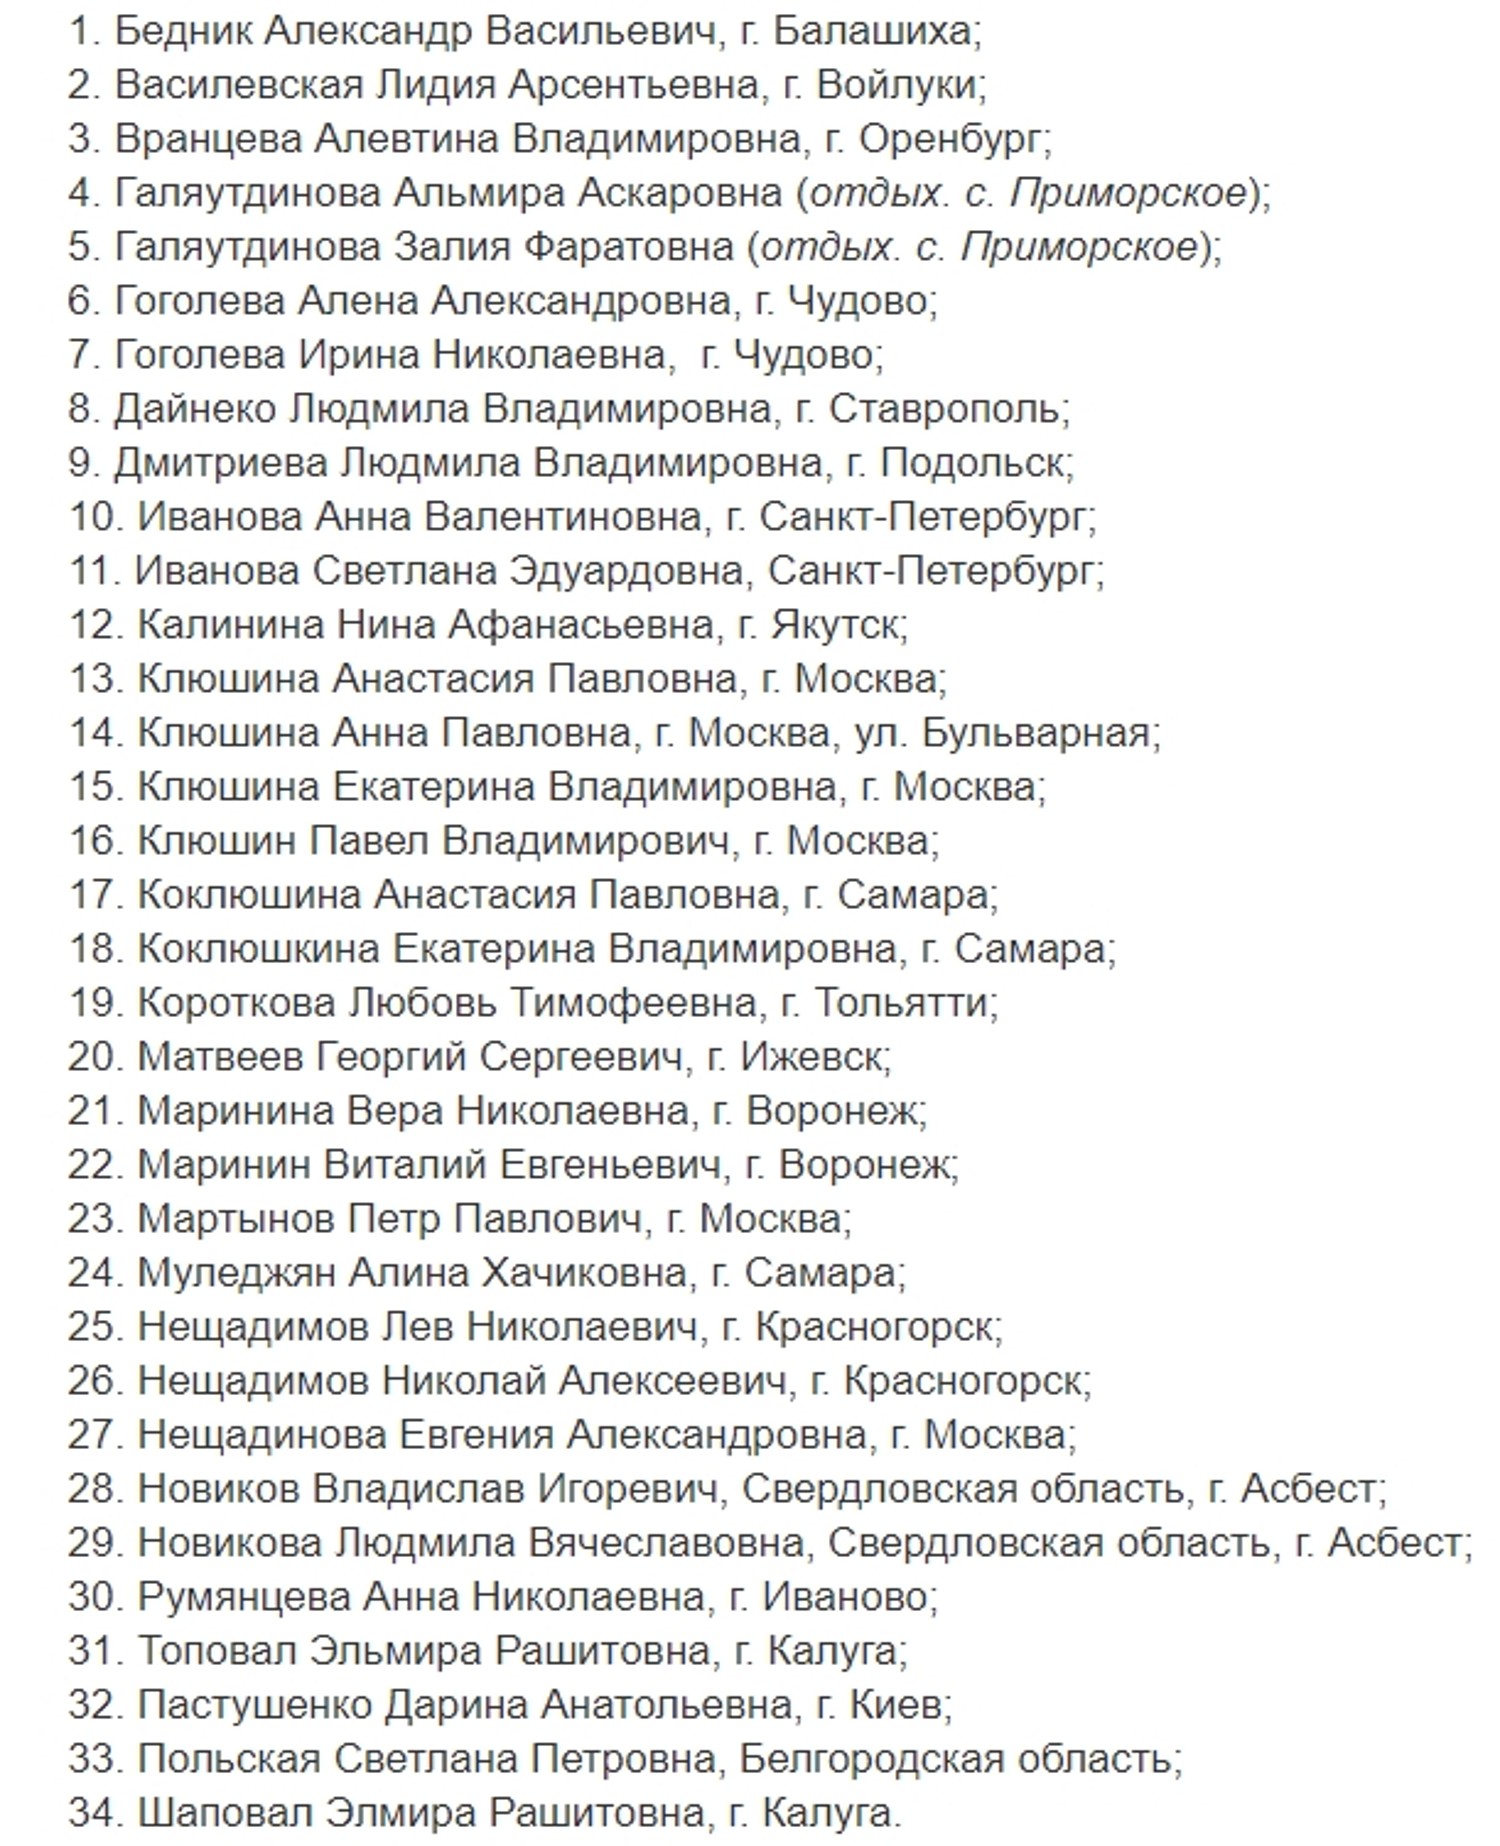 Минздрав опубликовал список погибших